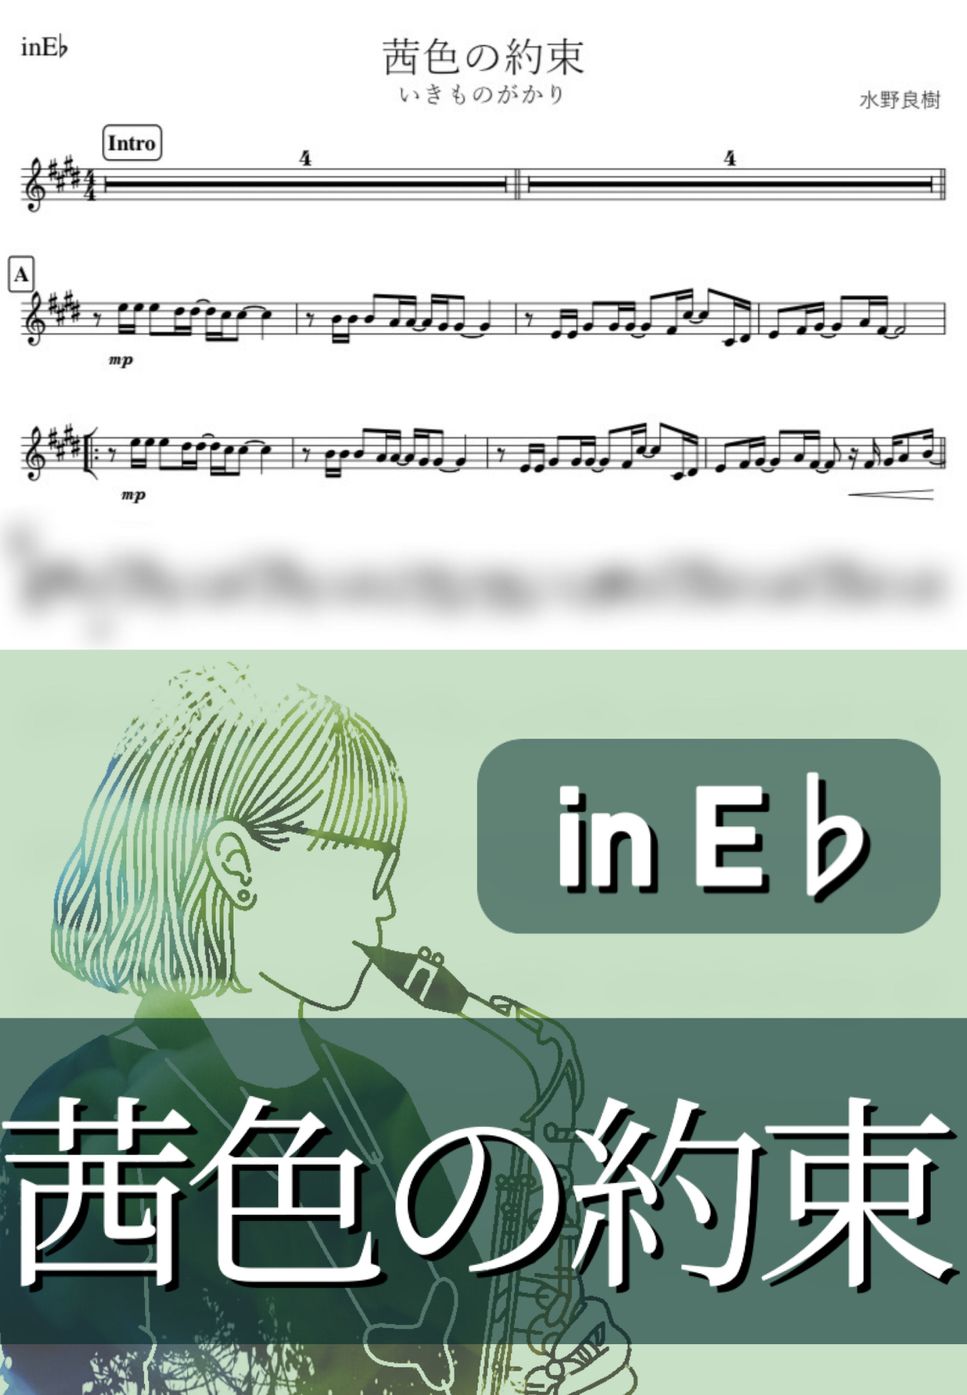 いきものがかり - 茜色の約束 (E♭) by kanamusic